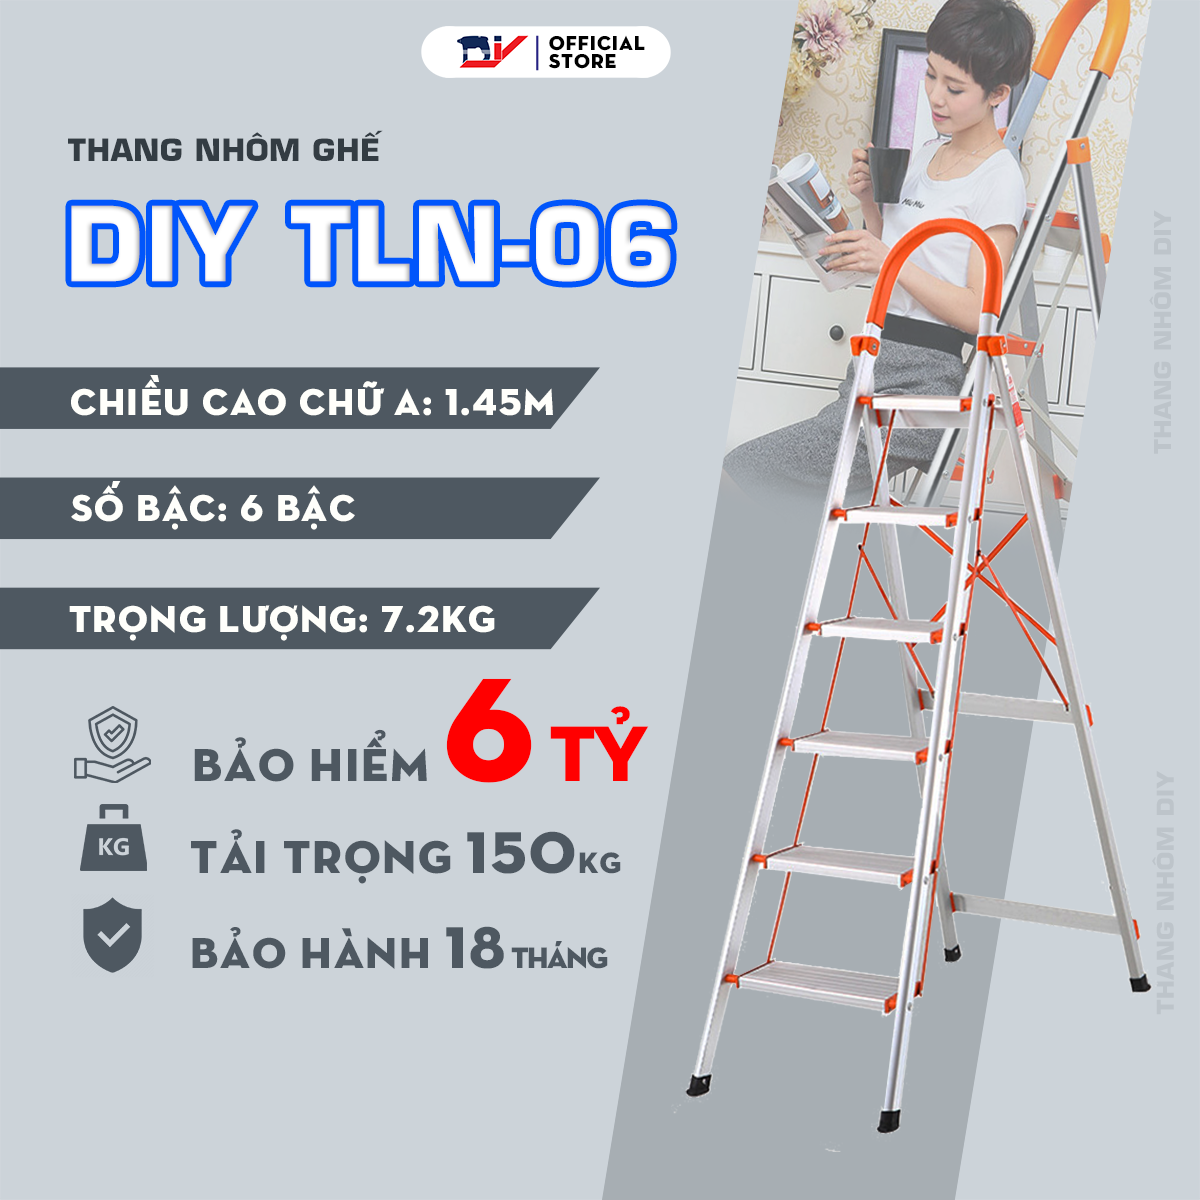 Thang nhôm ghế 6 bậc DIY TLN-06 tải trọng 150kg